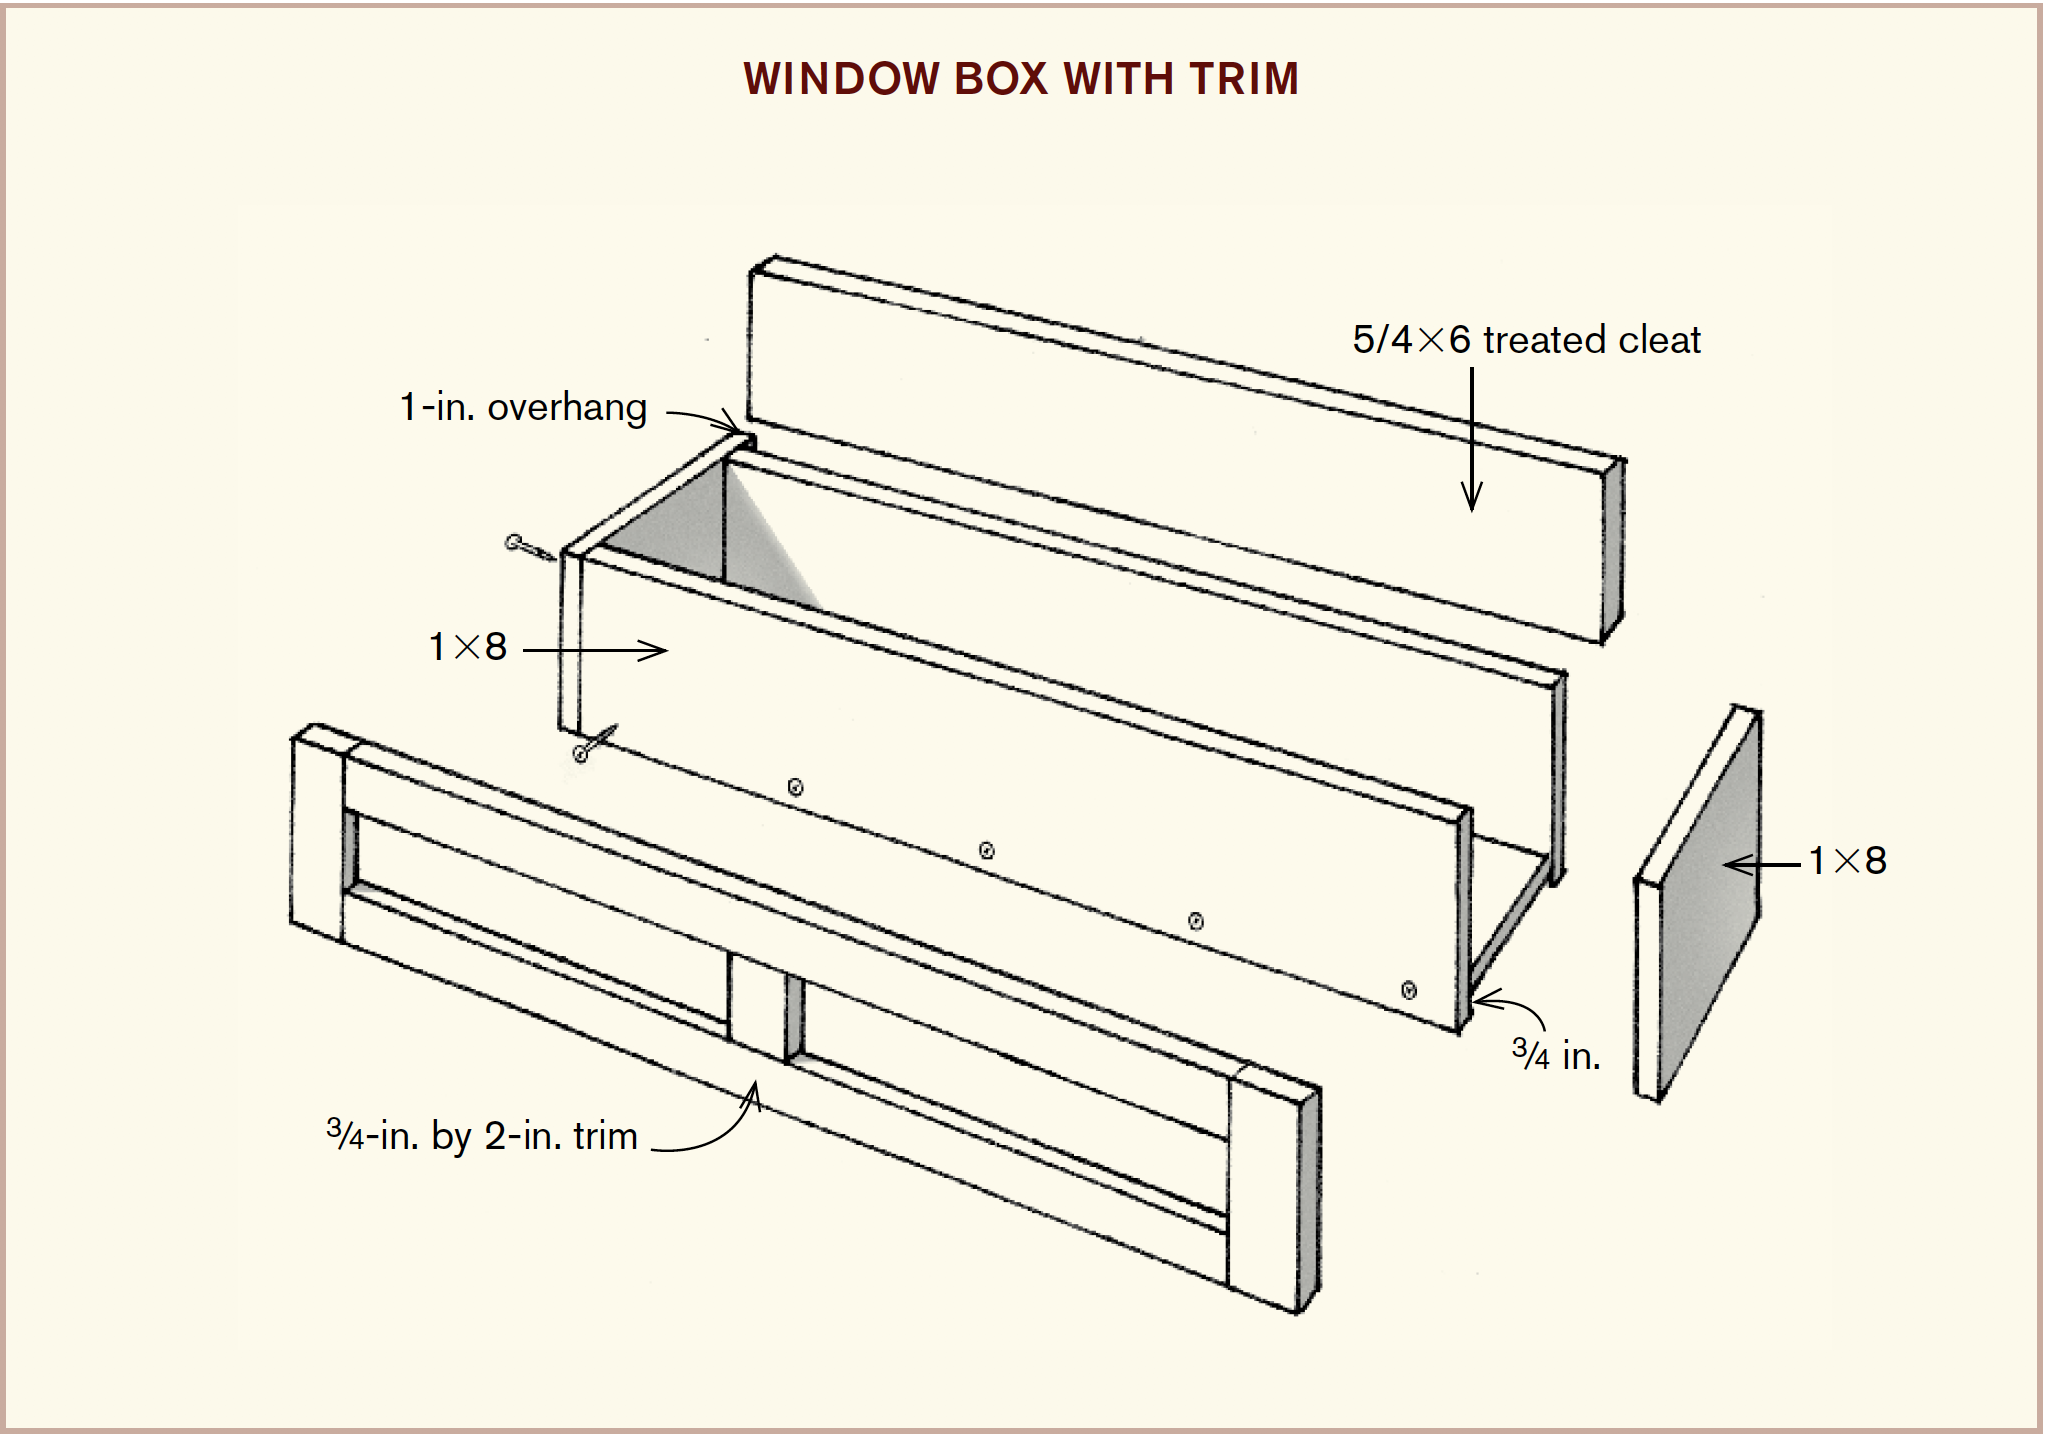 Window box with trim